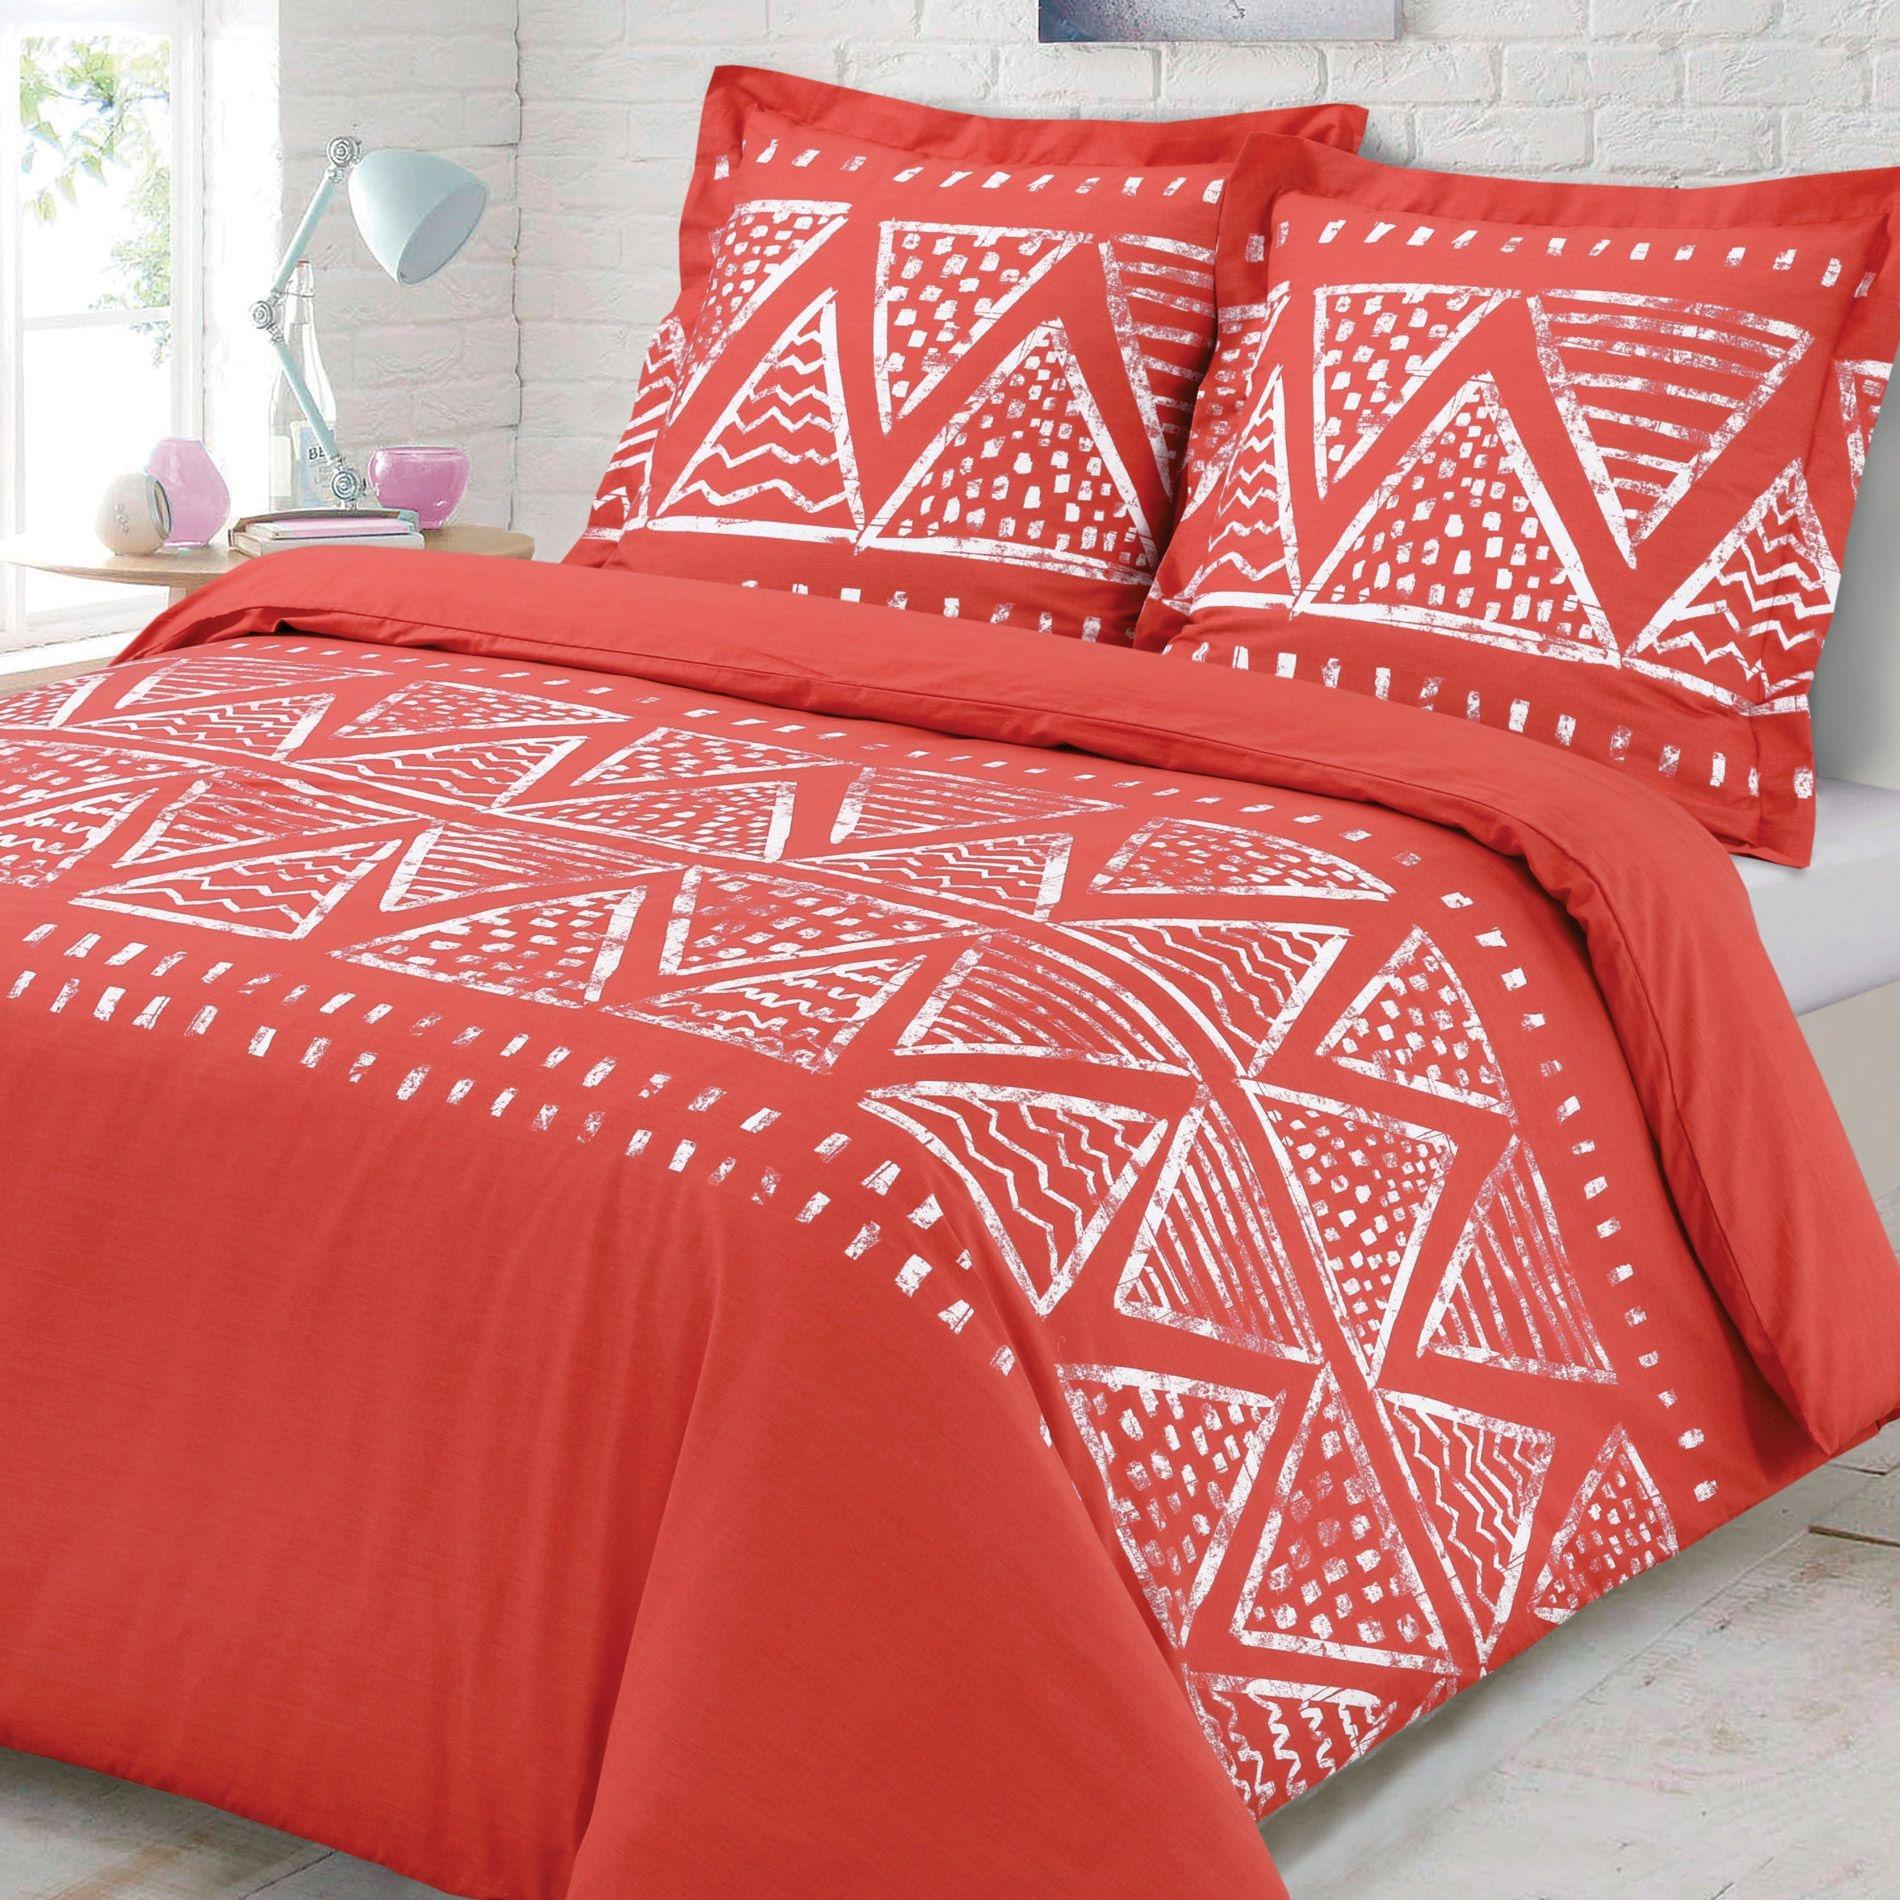 Pantone palette coral per completo letto Eminza